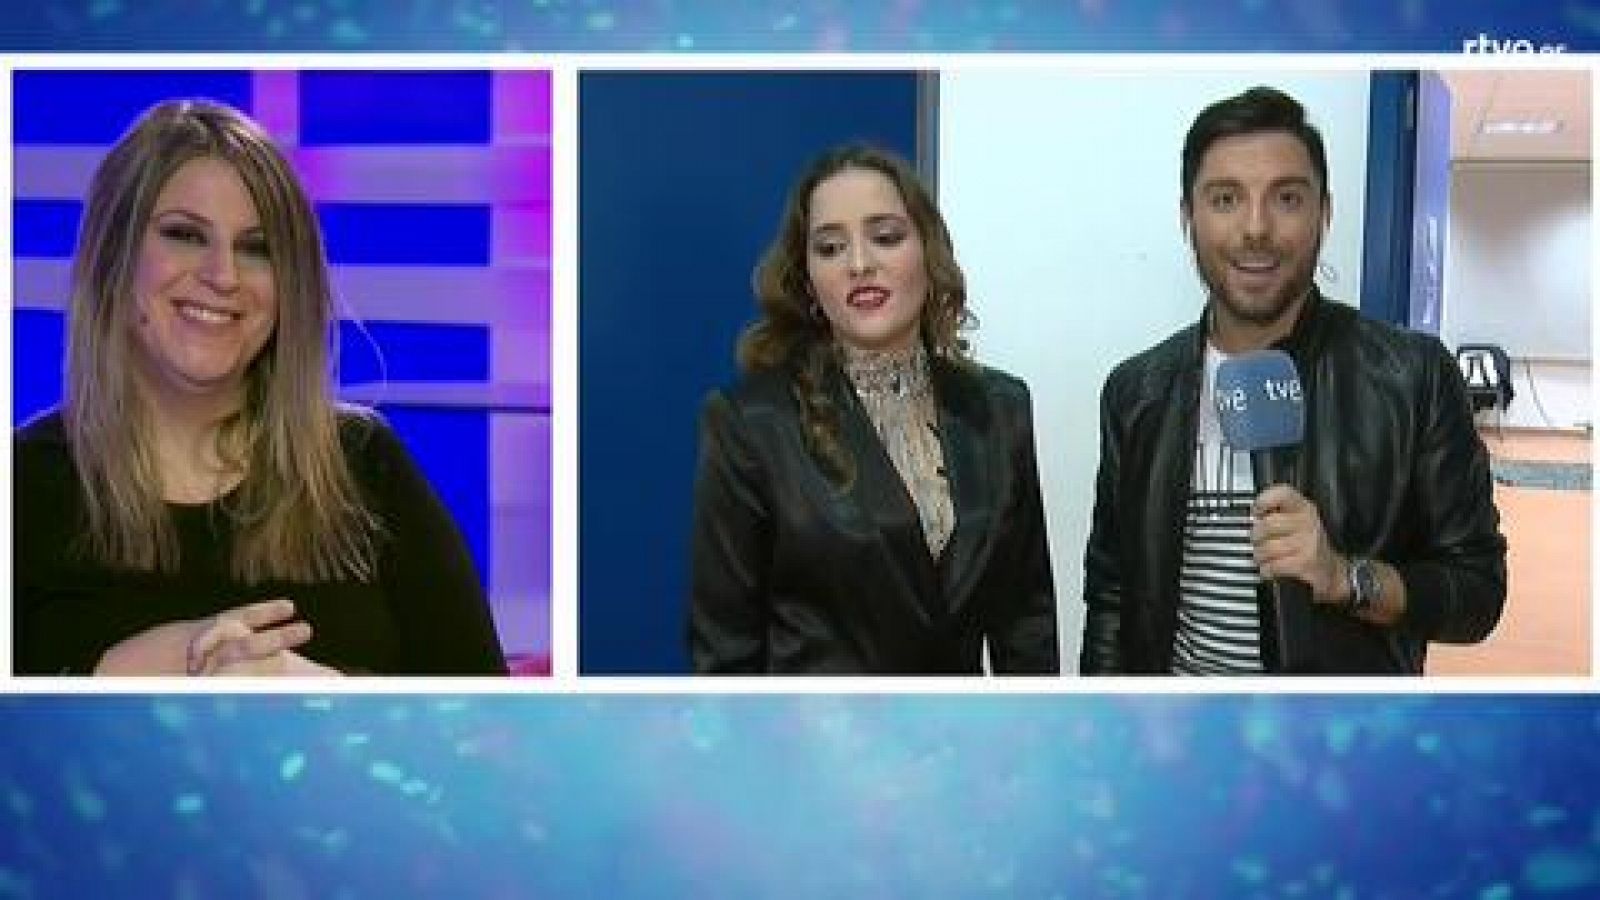 Eurovisión 2019 - Marilia: "La idea de ir a Eurovisión me fascina"